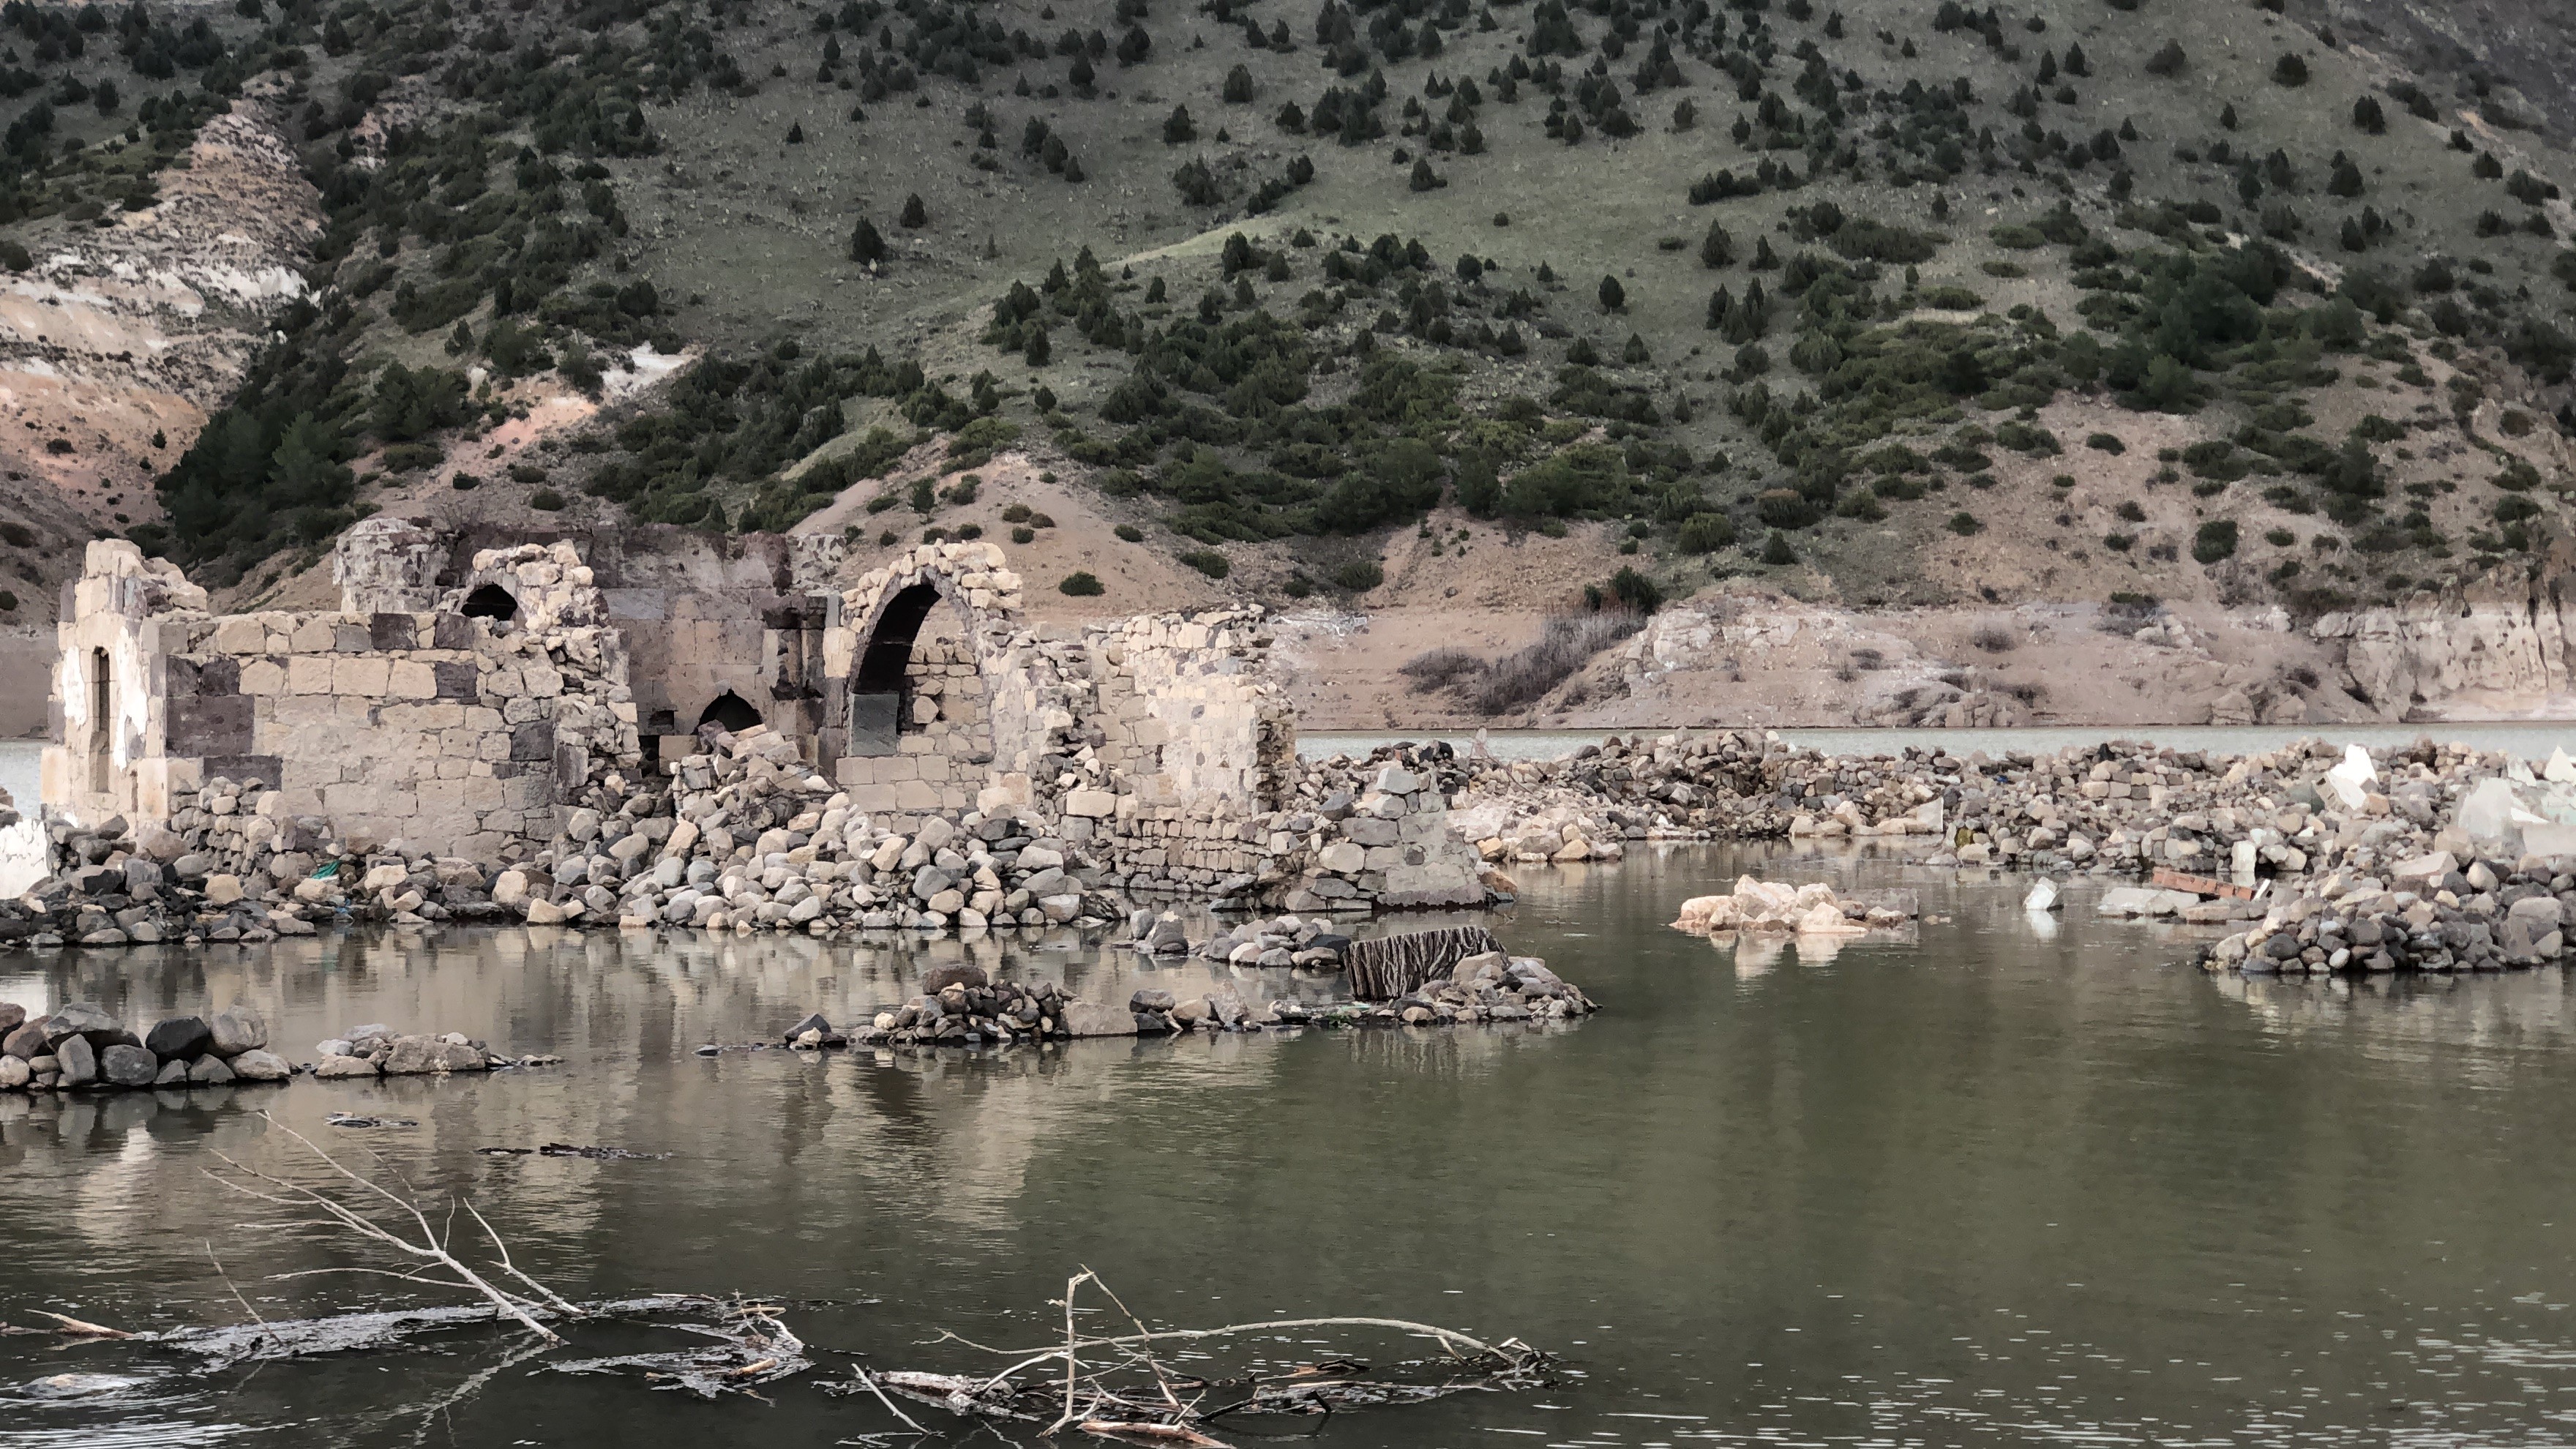 Kars'ta baraj kapakları kapandı, eski köy sular altında kaldı